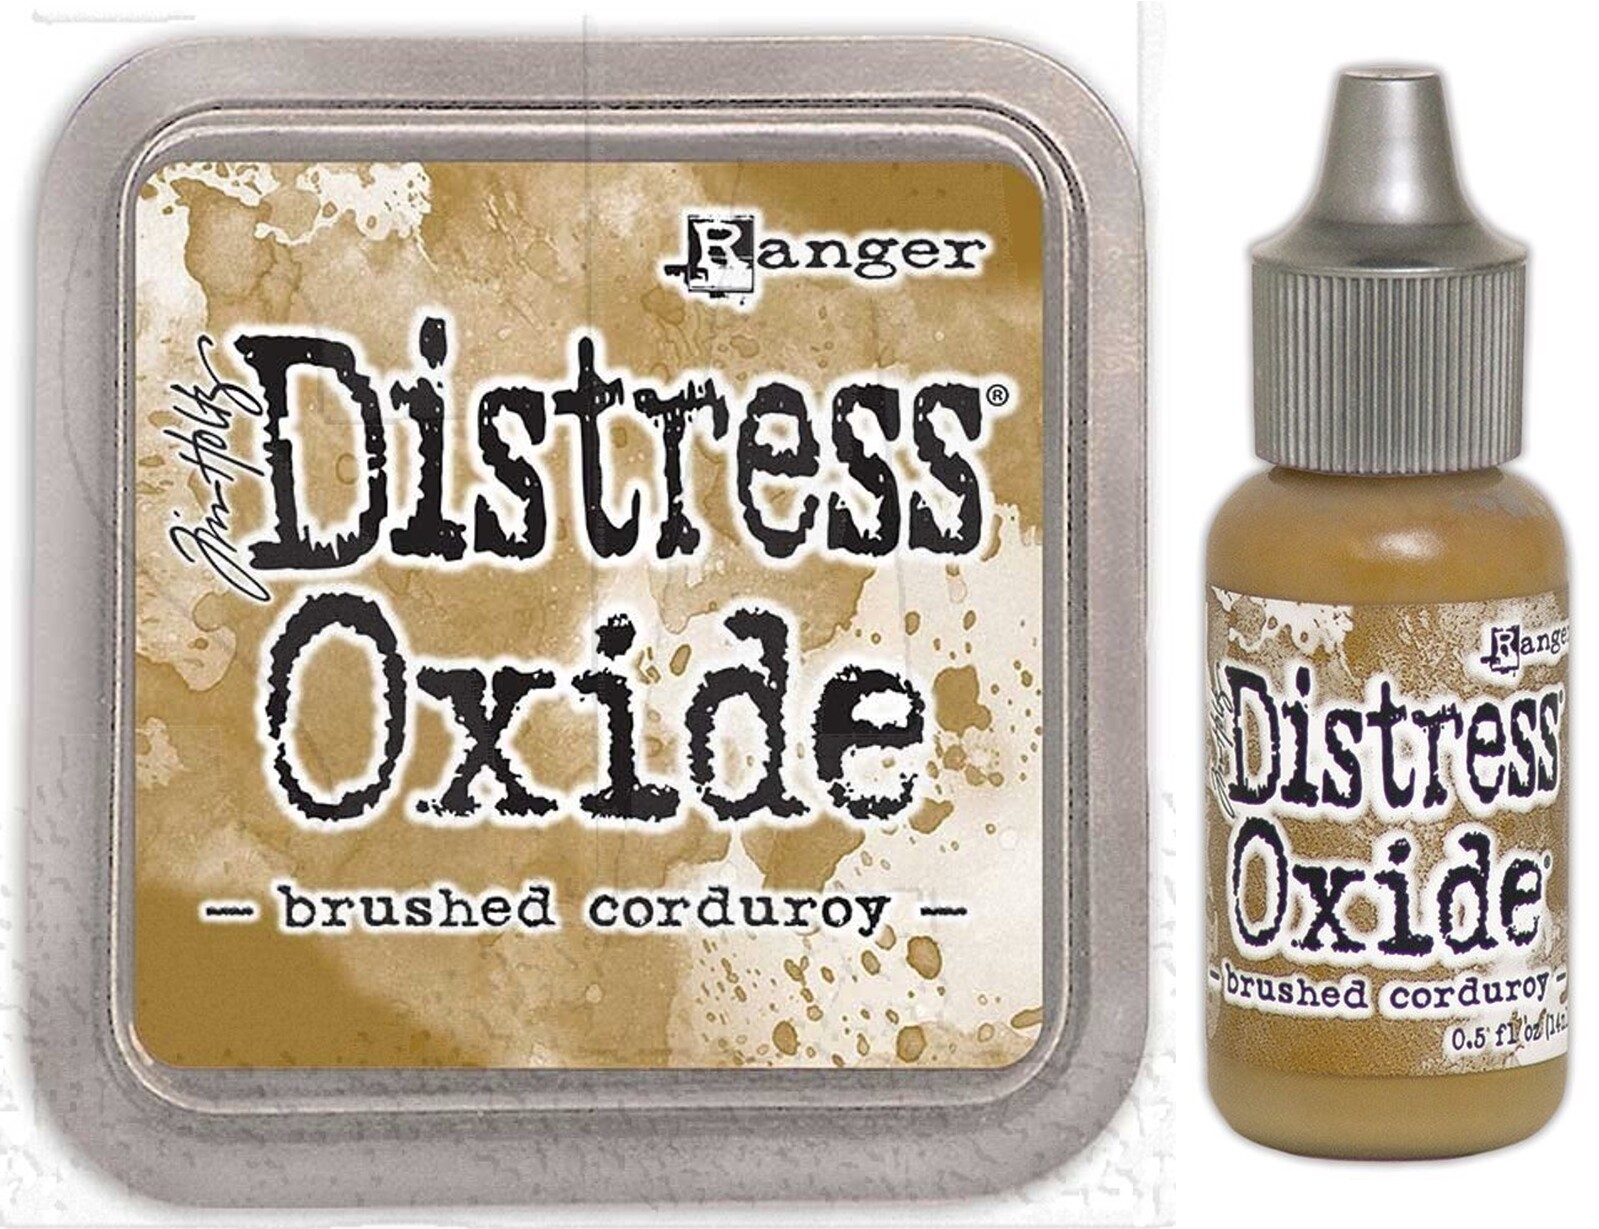 Tim Holtz Distress Oxide Ink Pad + Reinker Brushed Corduroy